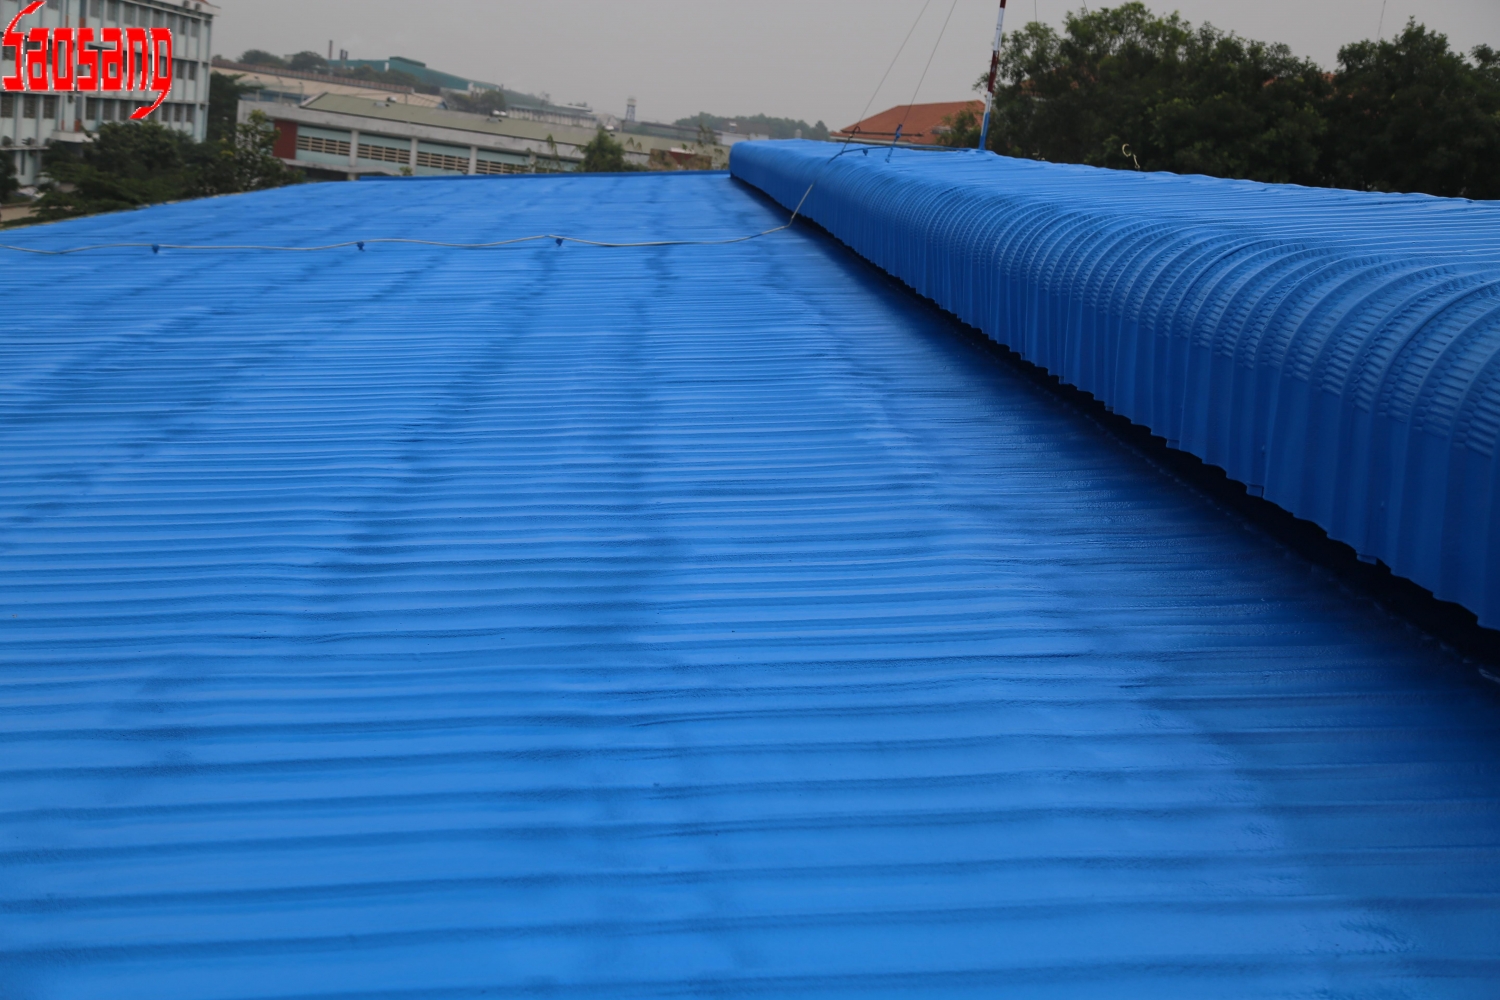 Chống nóng mái tôn là một giải pháp hiệu quả để giúp bạn tiết kiệm chi phí điện và nâng cao hiệu suất sản xuất. Với công nghệ tiên tiến, chúng tôi cam kết tạo ra sản phẩm chống nóng mái tôn đáp ứng nhu cầu của khách hàng ngay tại Việt Nam vào năm